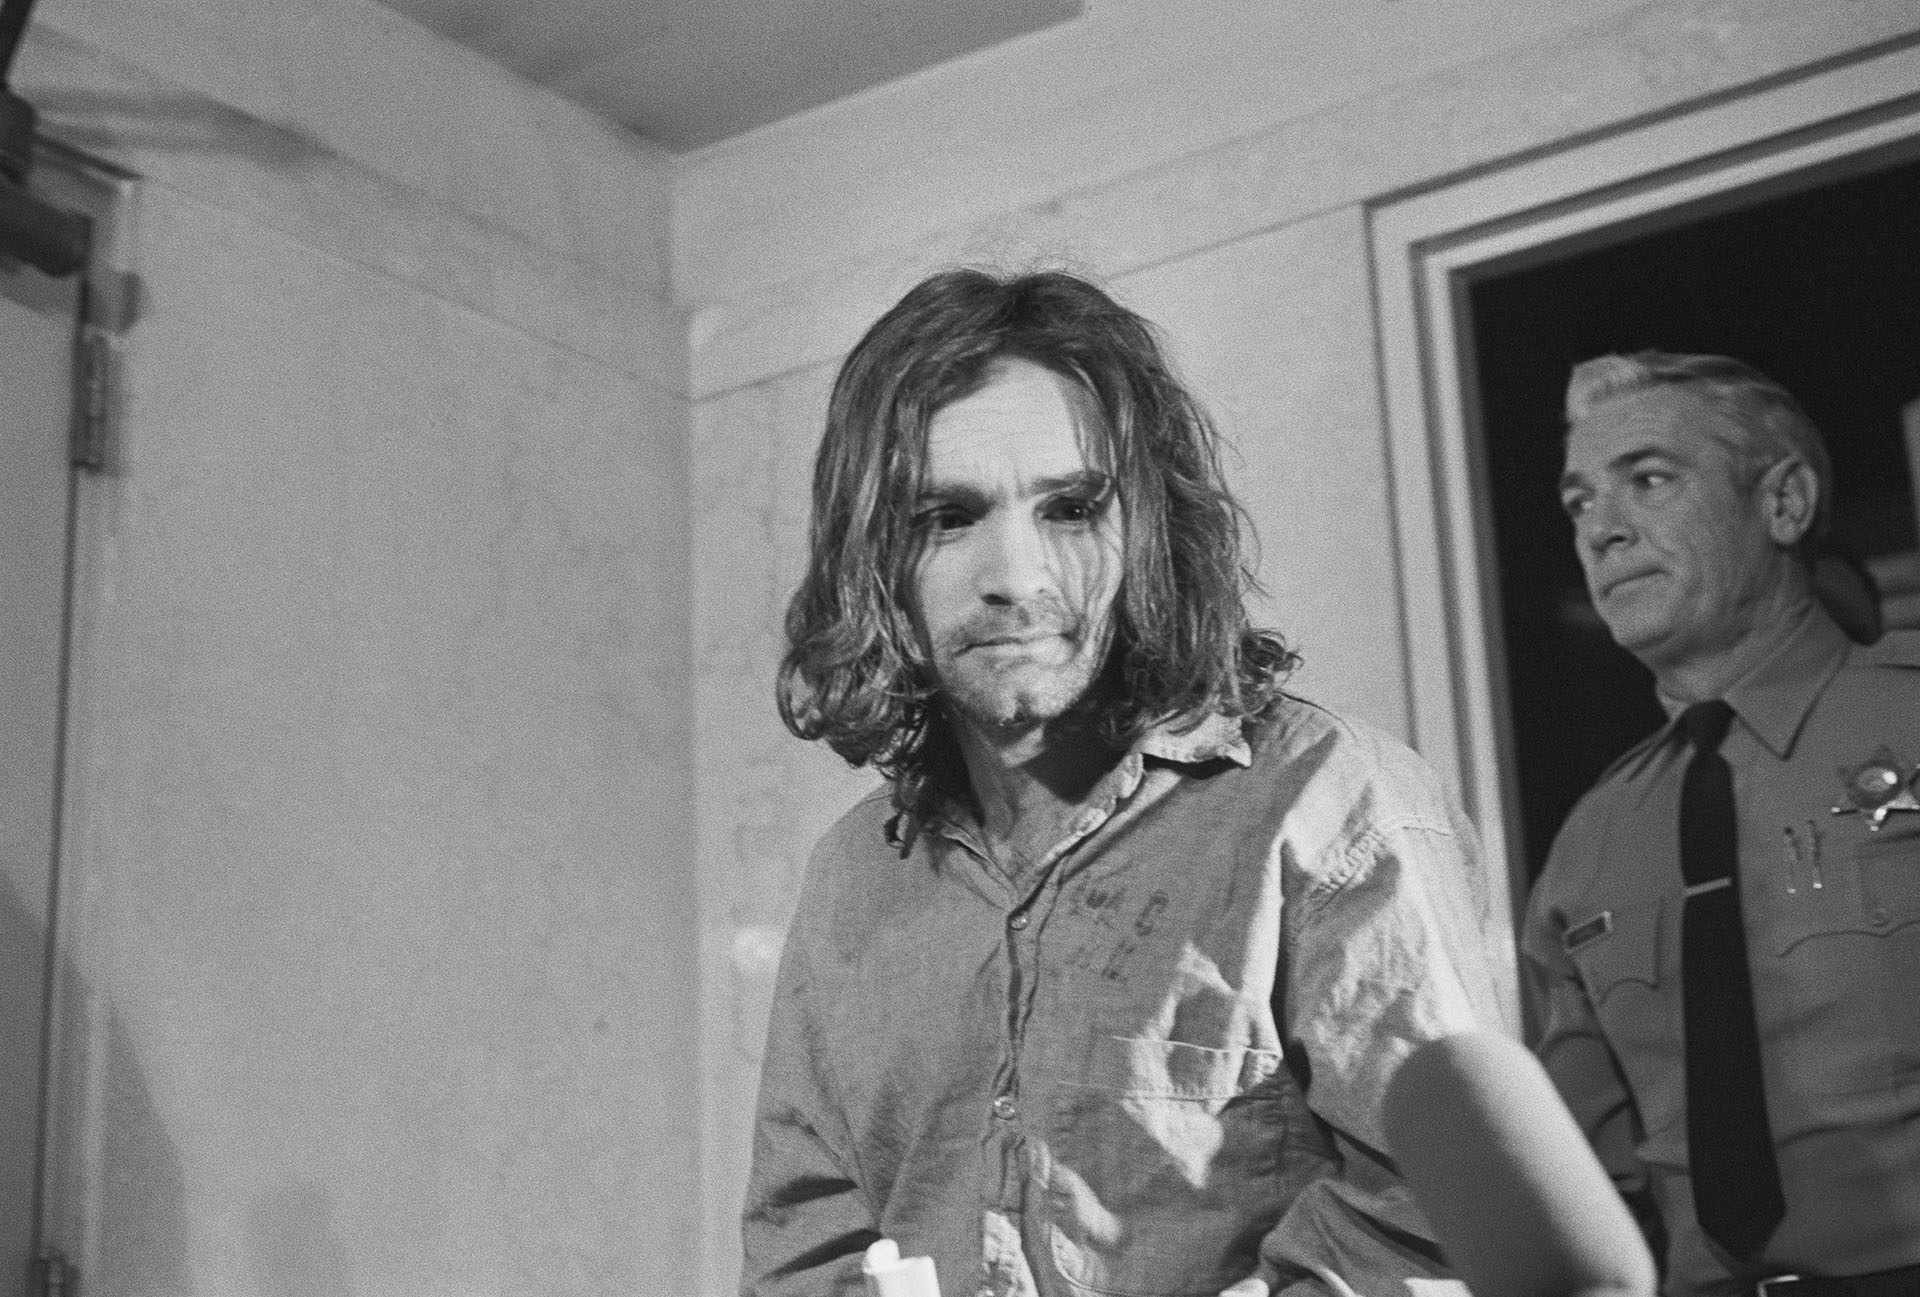 Charles Manson, el líder de un culto hippie que ordenó la masacre de Sharon Tate creyendo que era inminente el inicio de una guerra racial 